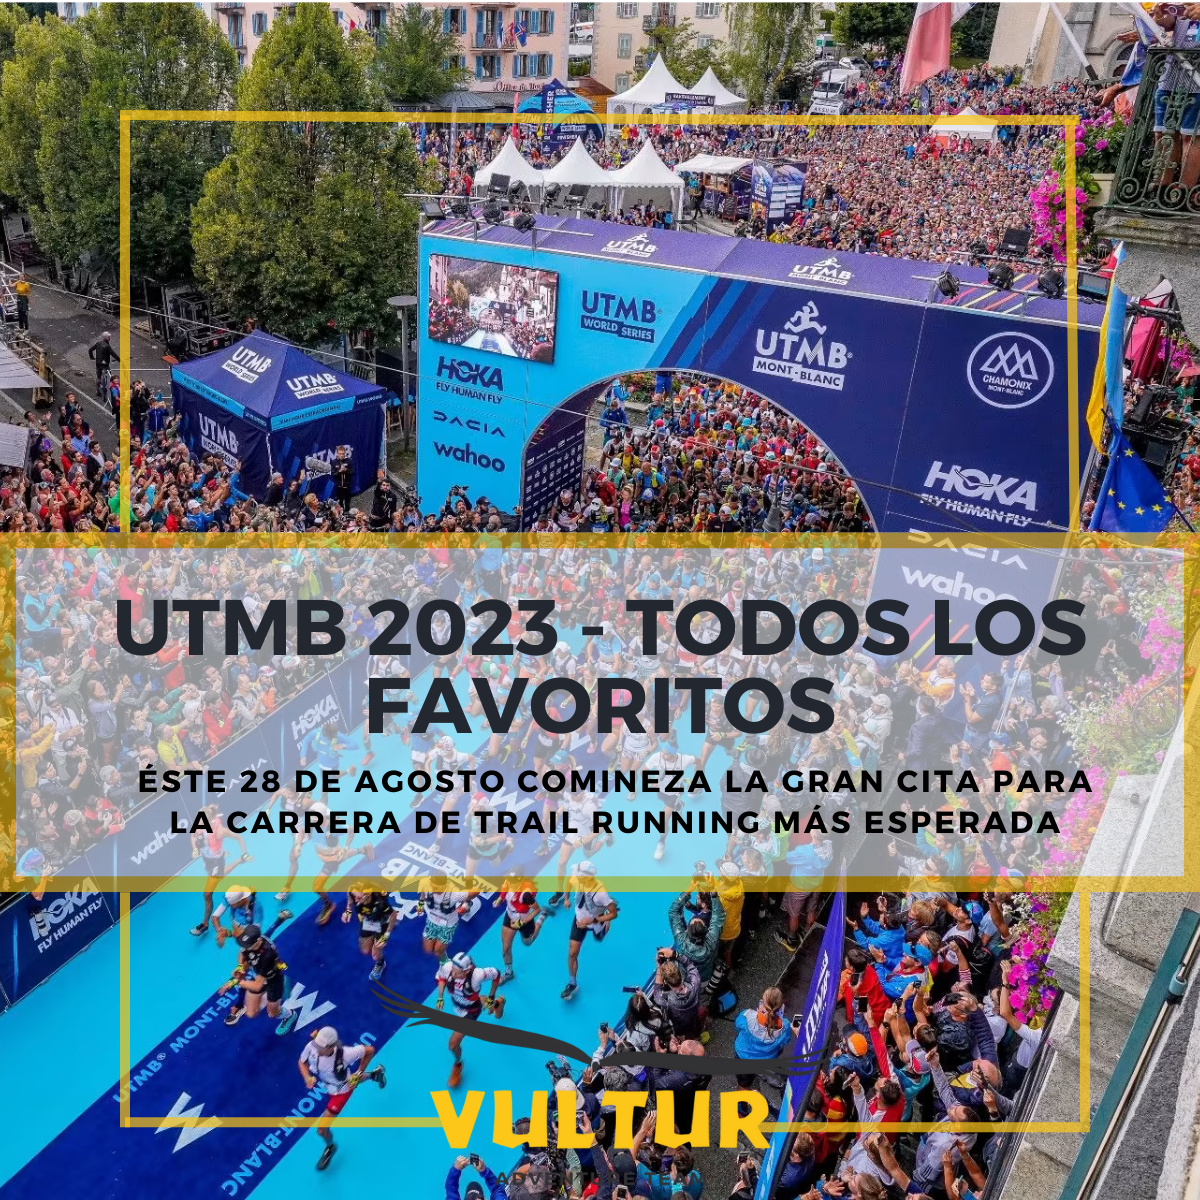 UTMB 2023 – TODOS LOS FAVORITOS